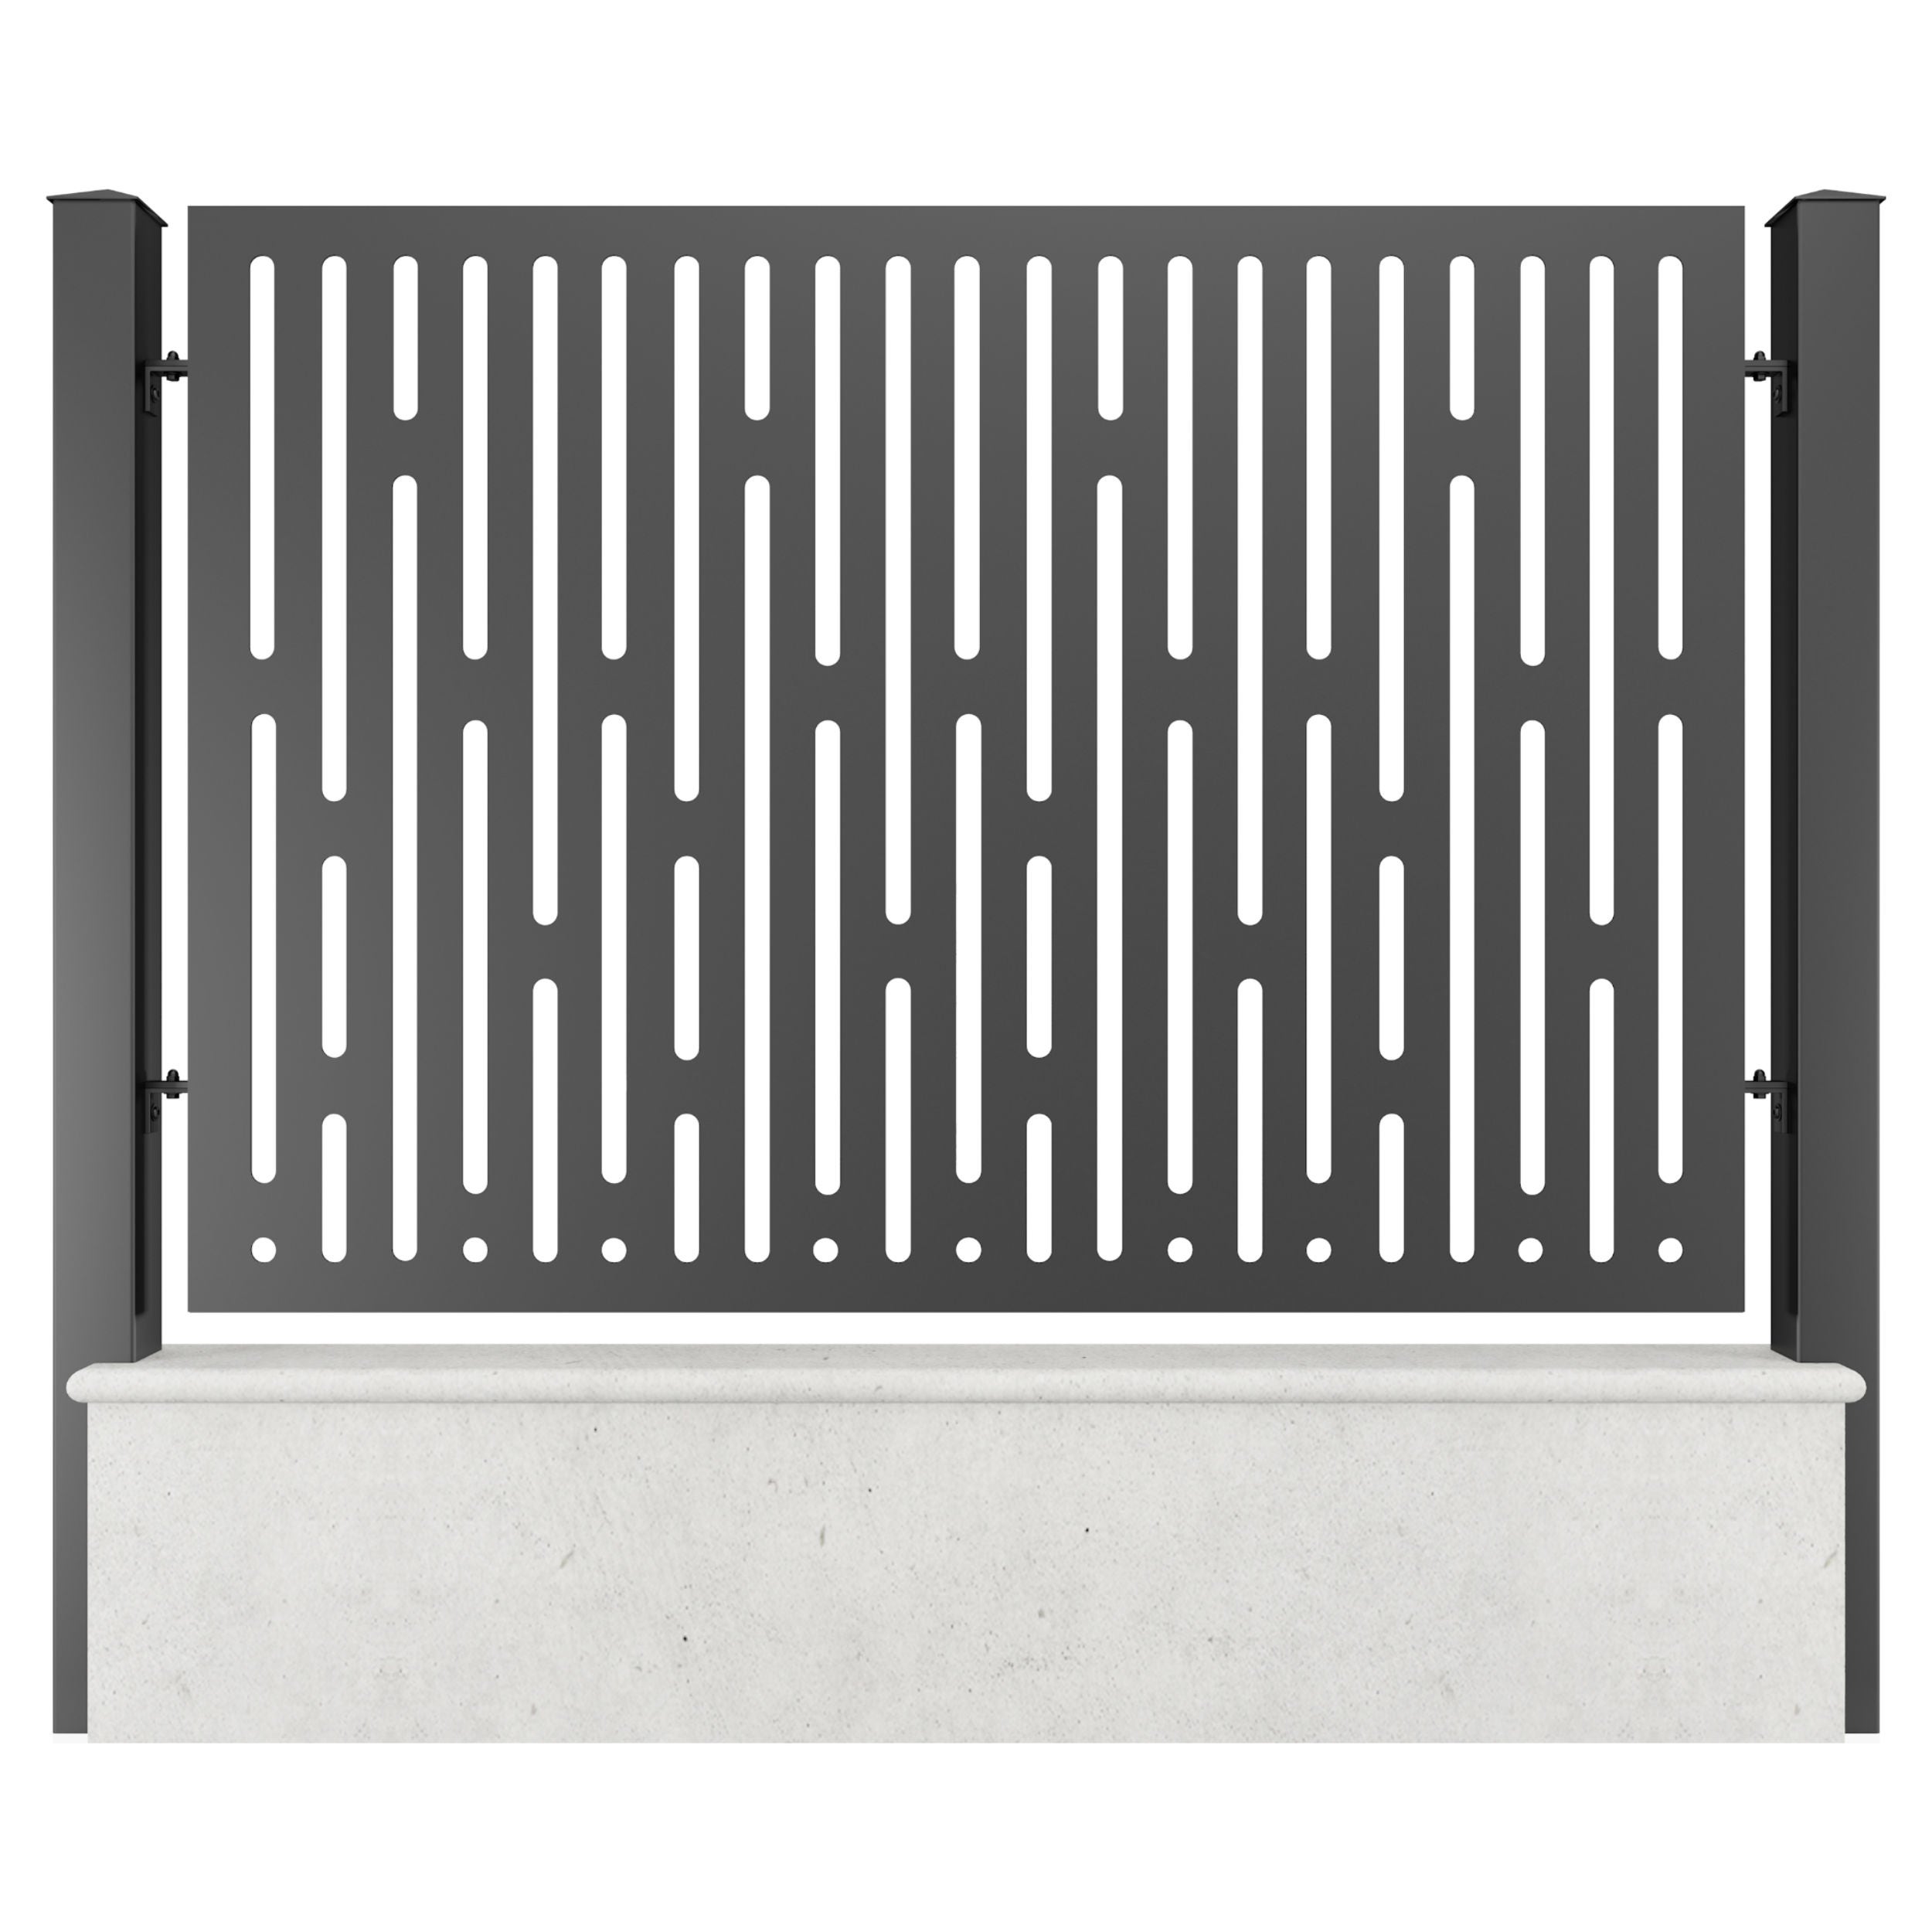 Panou metalic gard din tabla decupata G36B, otel, negru (RAL 9005), 1960 x 1500 mm